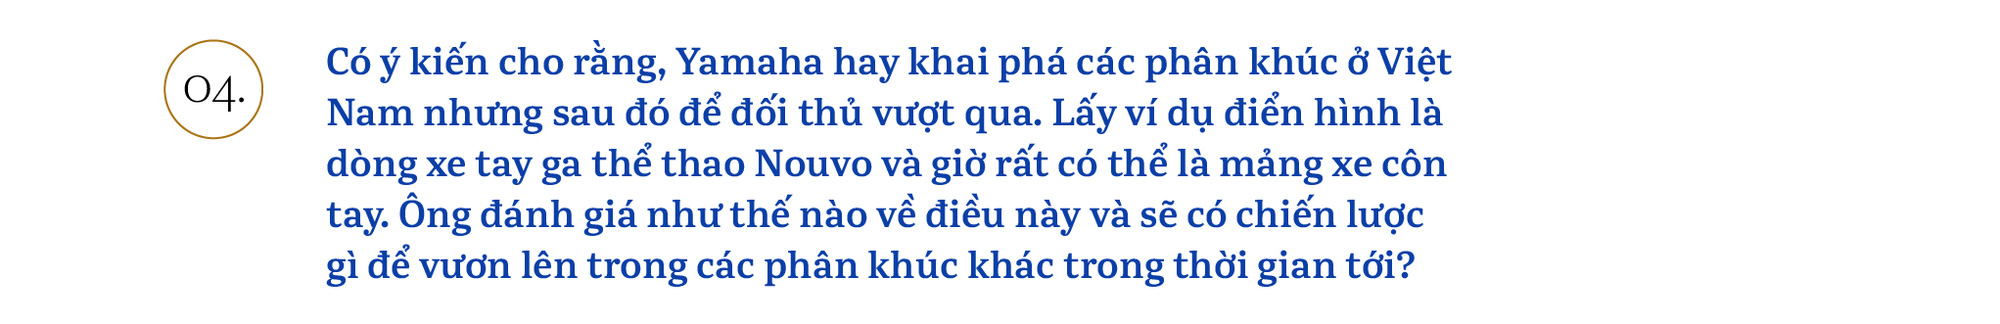 Chủ tịch Yamaha Việt Nam: ‘Chúng tôi sẽ khơi dậy khách hàng trẻ tìm được bản ngã của chính mình’ - Ảnh 7.